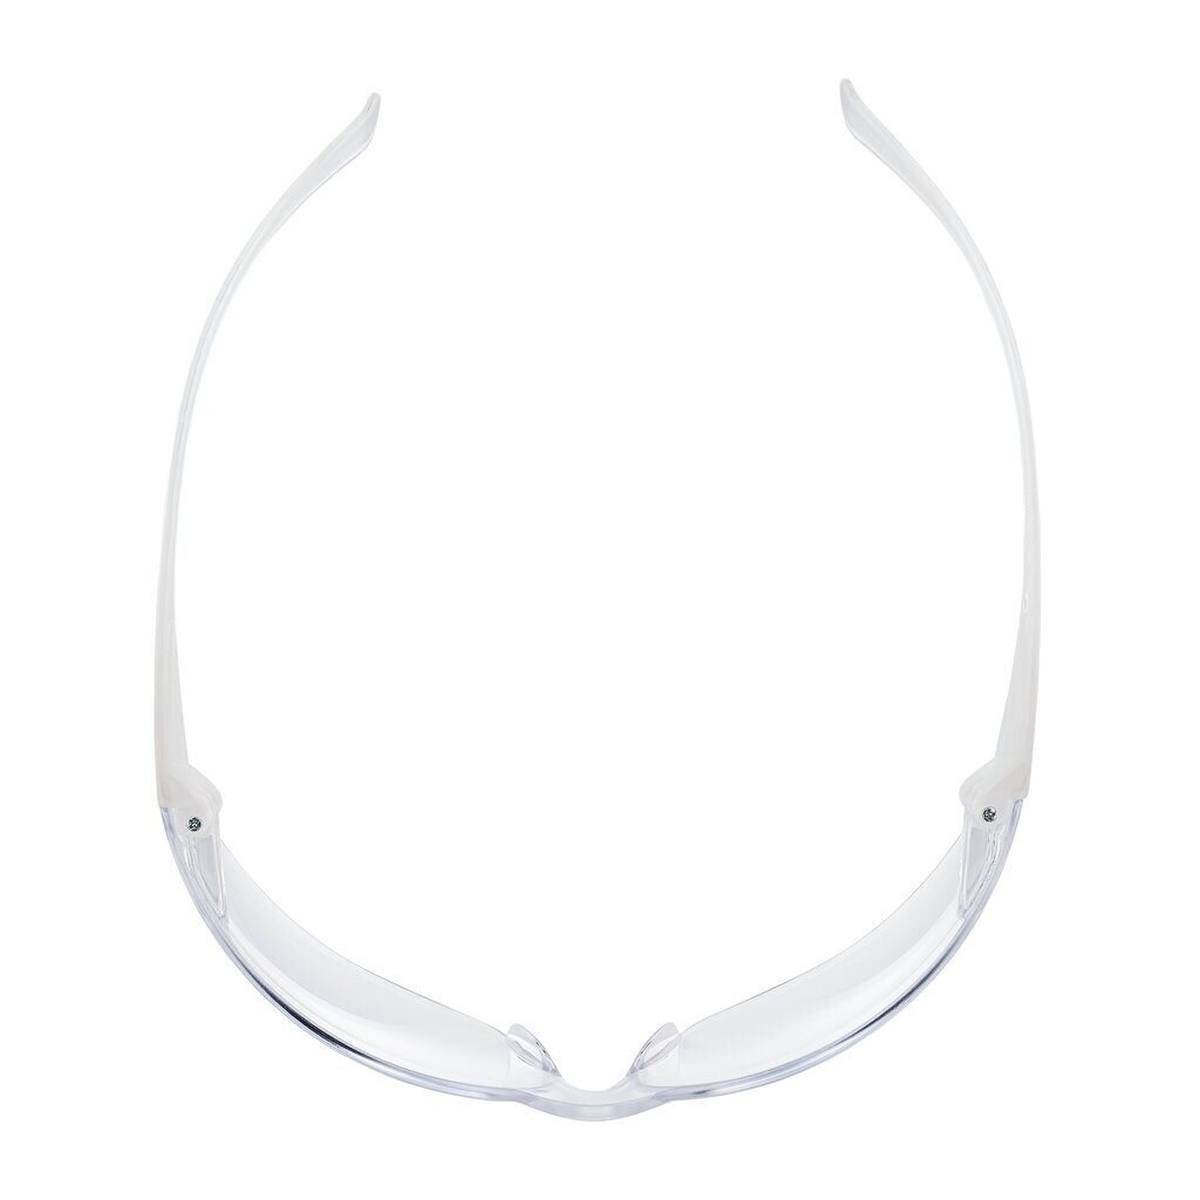 occhiali di sicurezza 3M Virtua Slim / Kids Fit con rivestimento antigraffio/antiappannamento, lenti trasparenti, 71500-00008